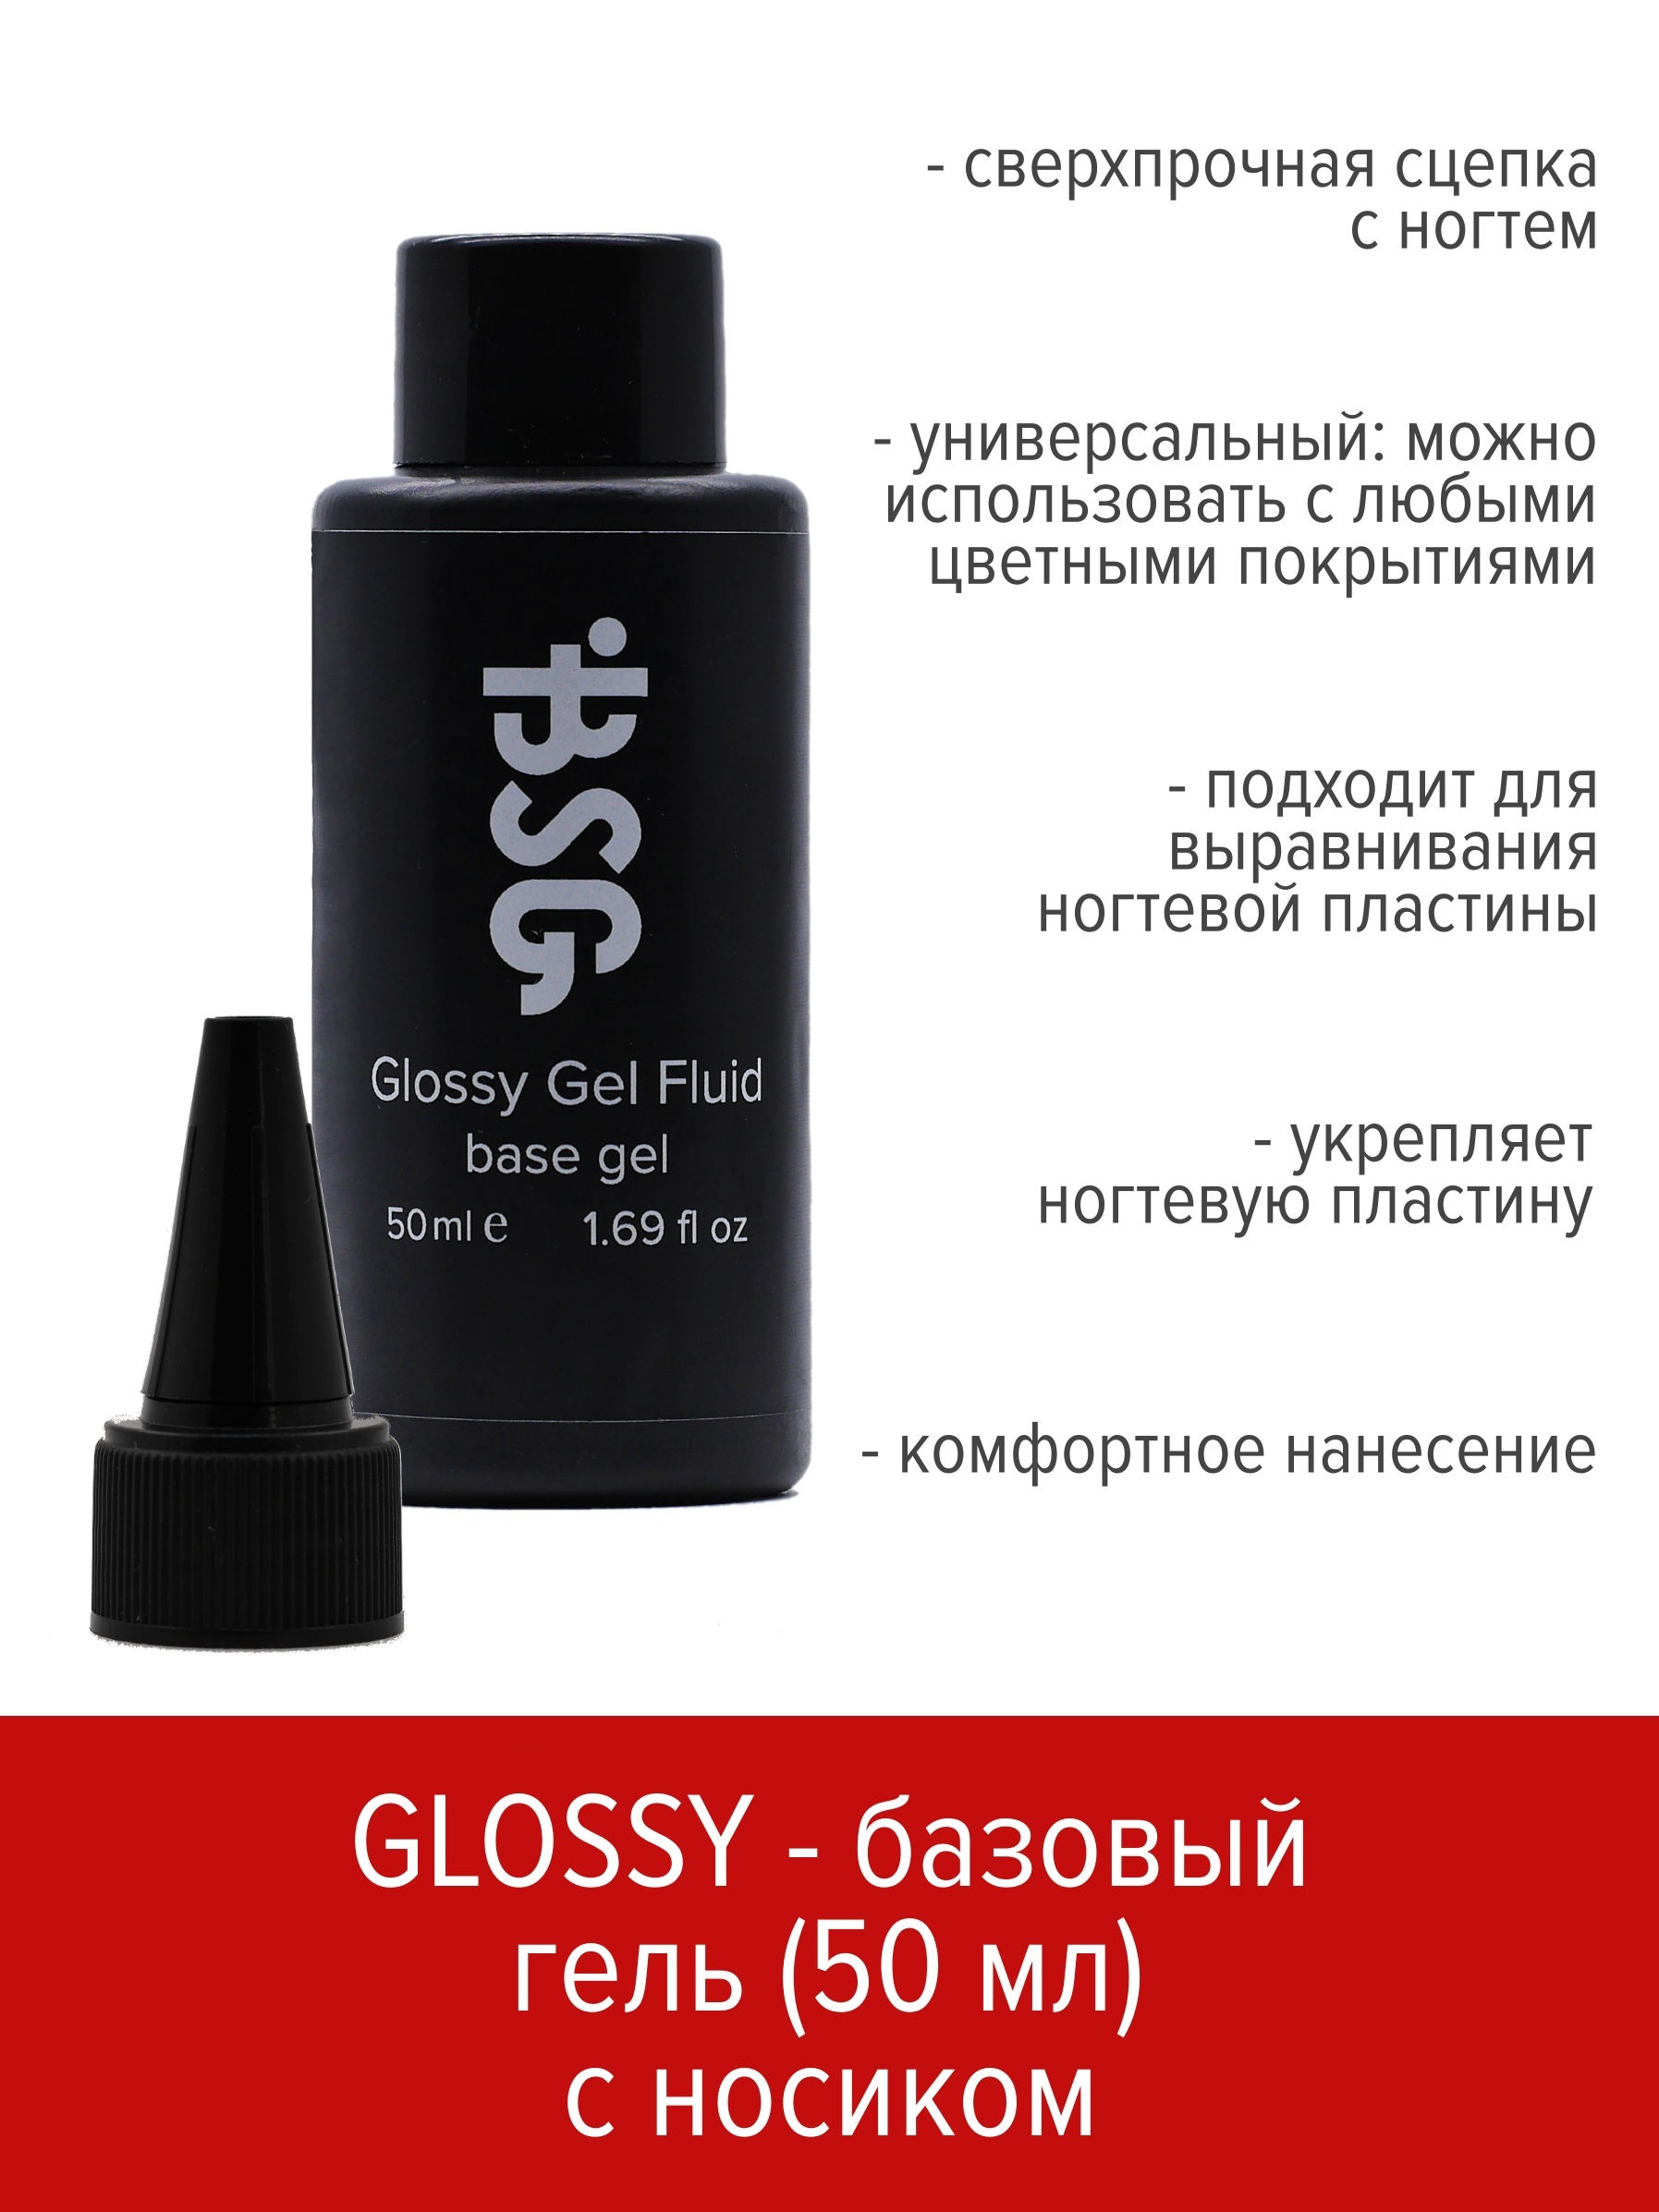 Базовый универсальный гель BSG Glossy gel fluid 50 мл